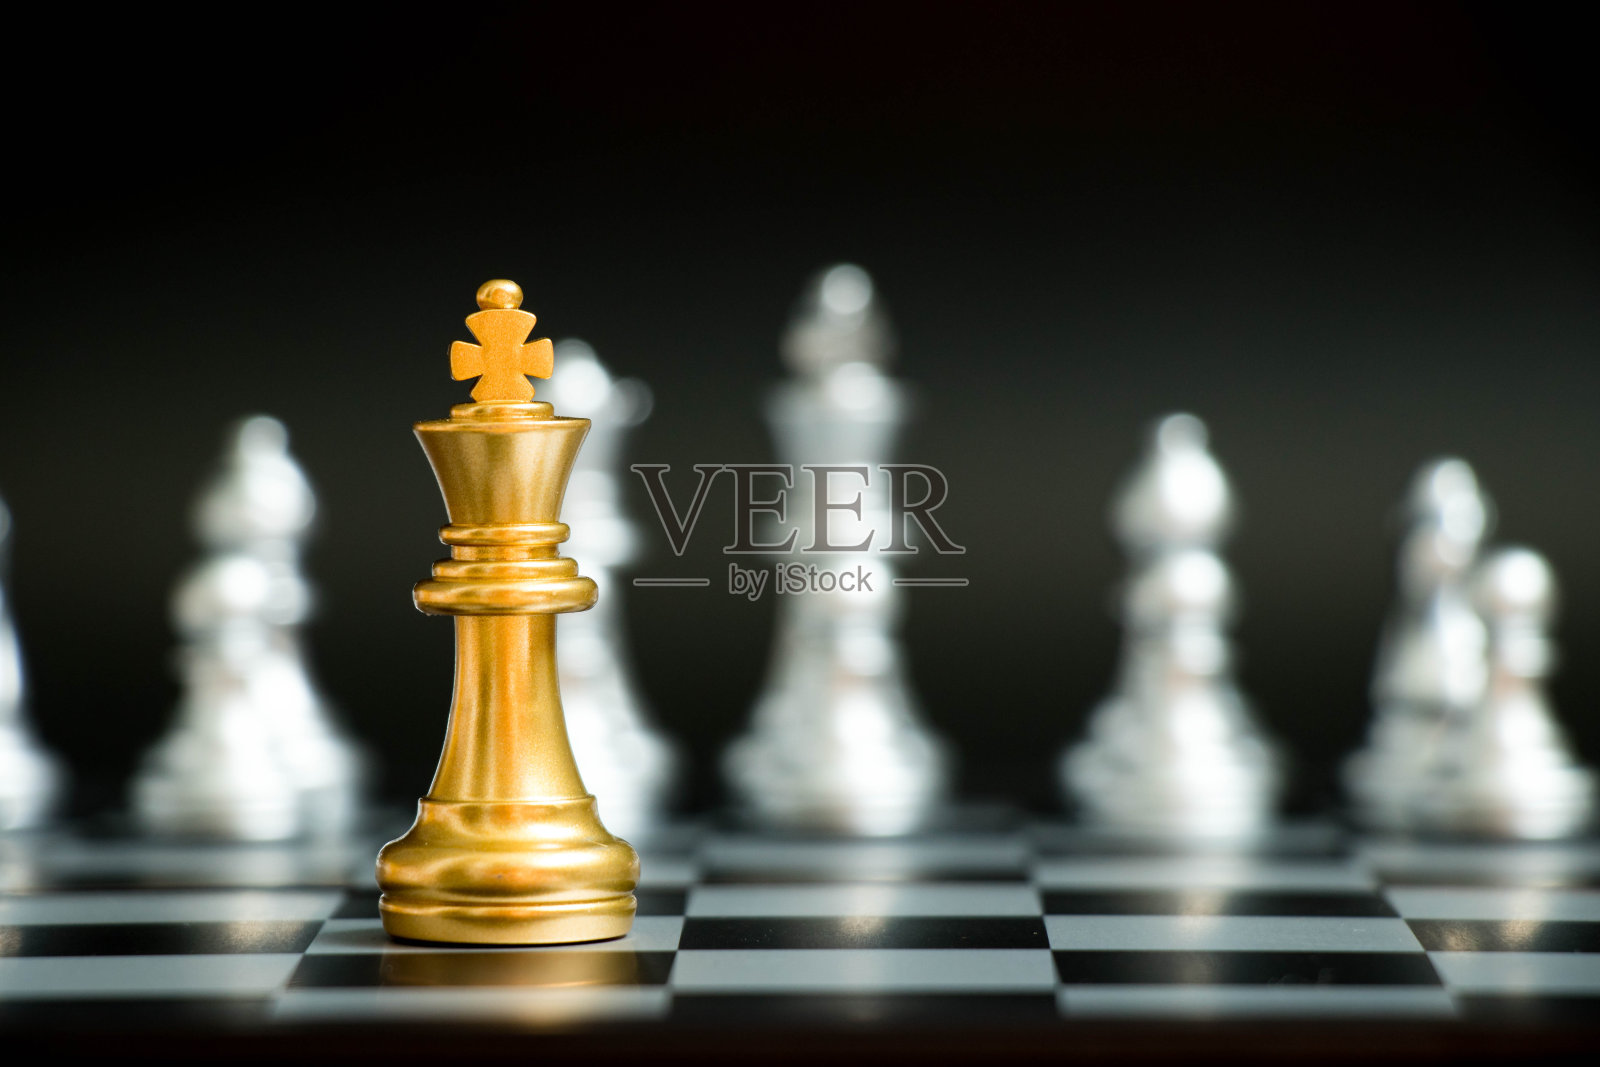 金王在棋局中面对另一支银队在黑色背景下(公司战略，商业胜利或决策的概念)照片摄影图片